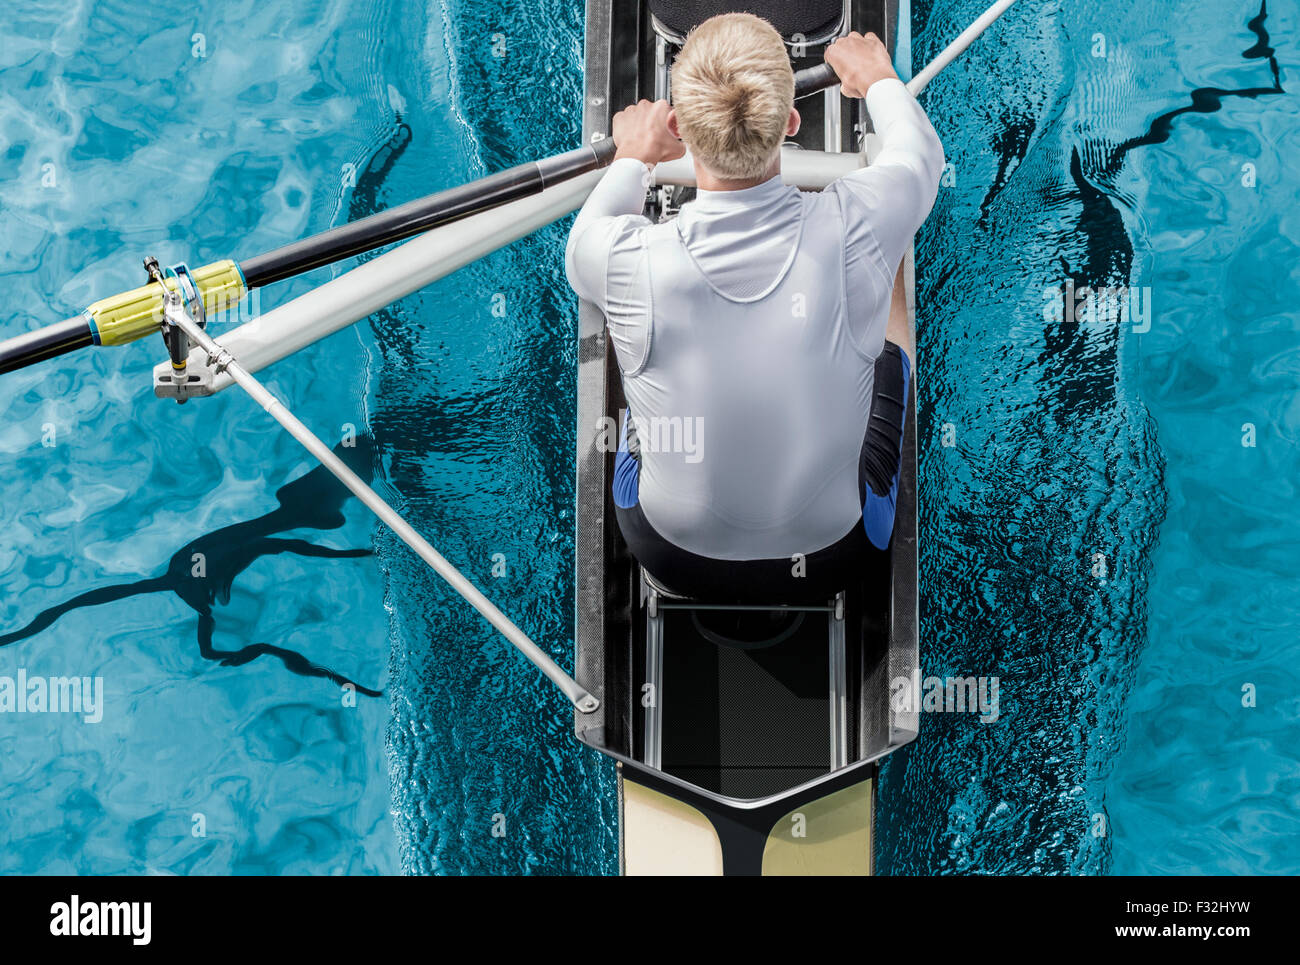 Vista superior de la competición deportiva remero, quien trazos de Pádel a través de su agua azul metalizado. Foto de stock